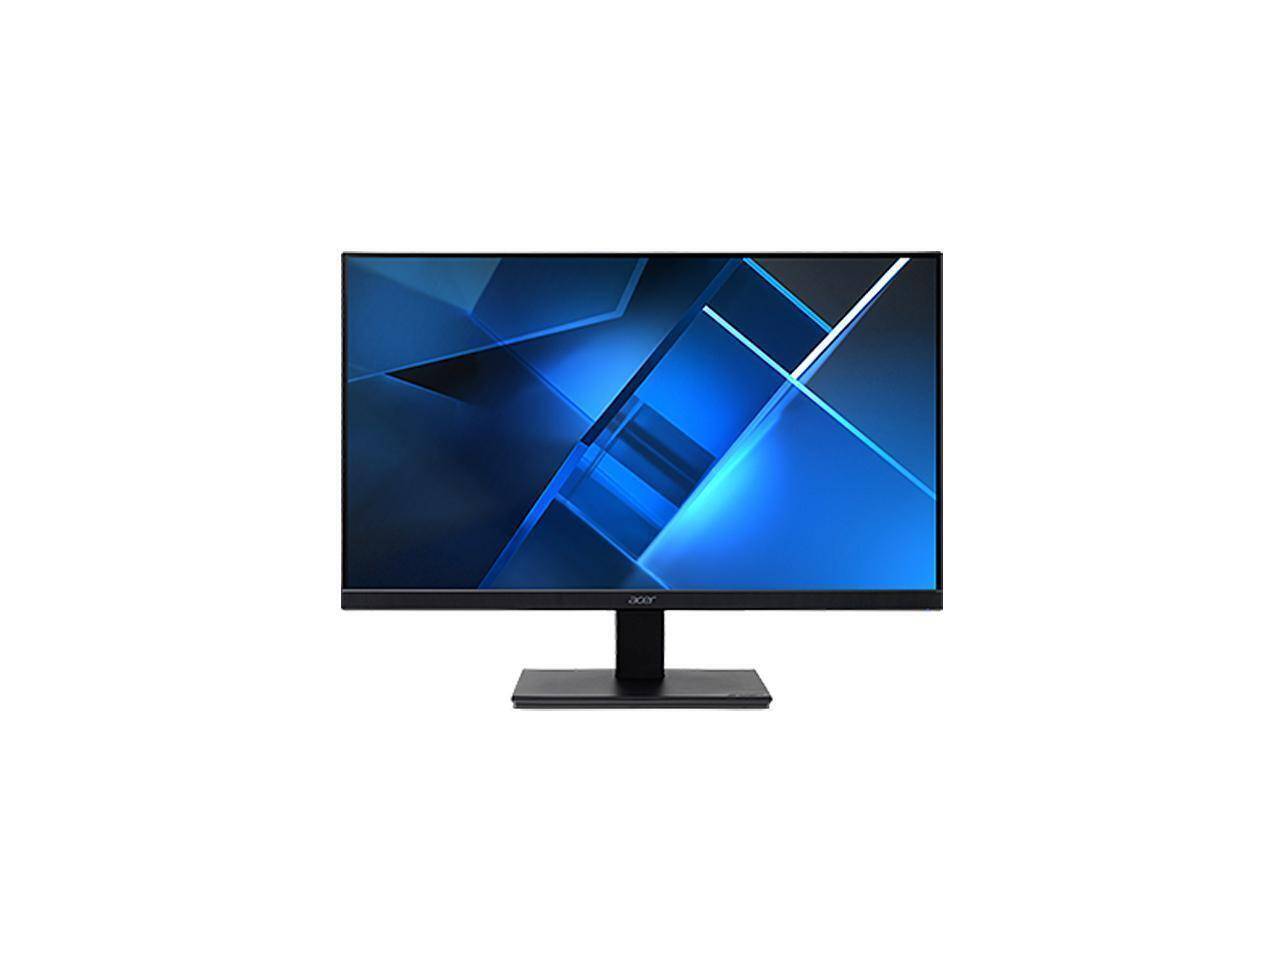 MSI Optix G2722 27 Full HD LED Gaming LCD Monitor - 16:9 - Invastor